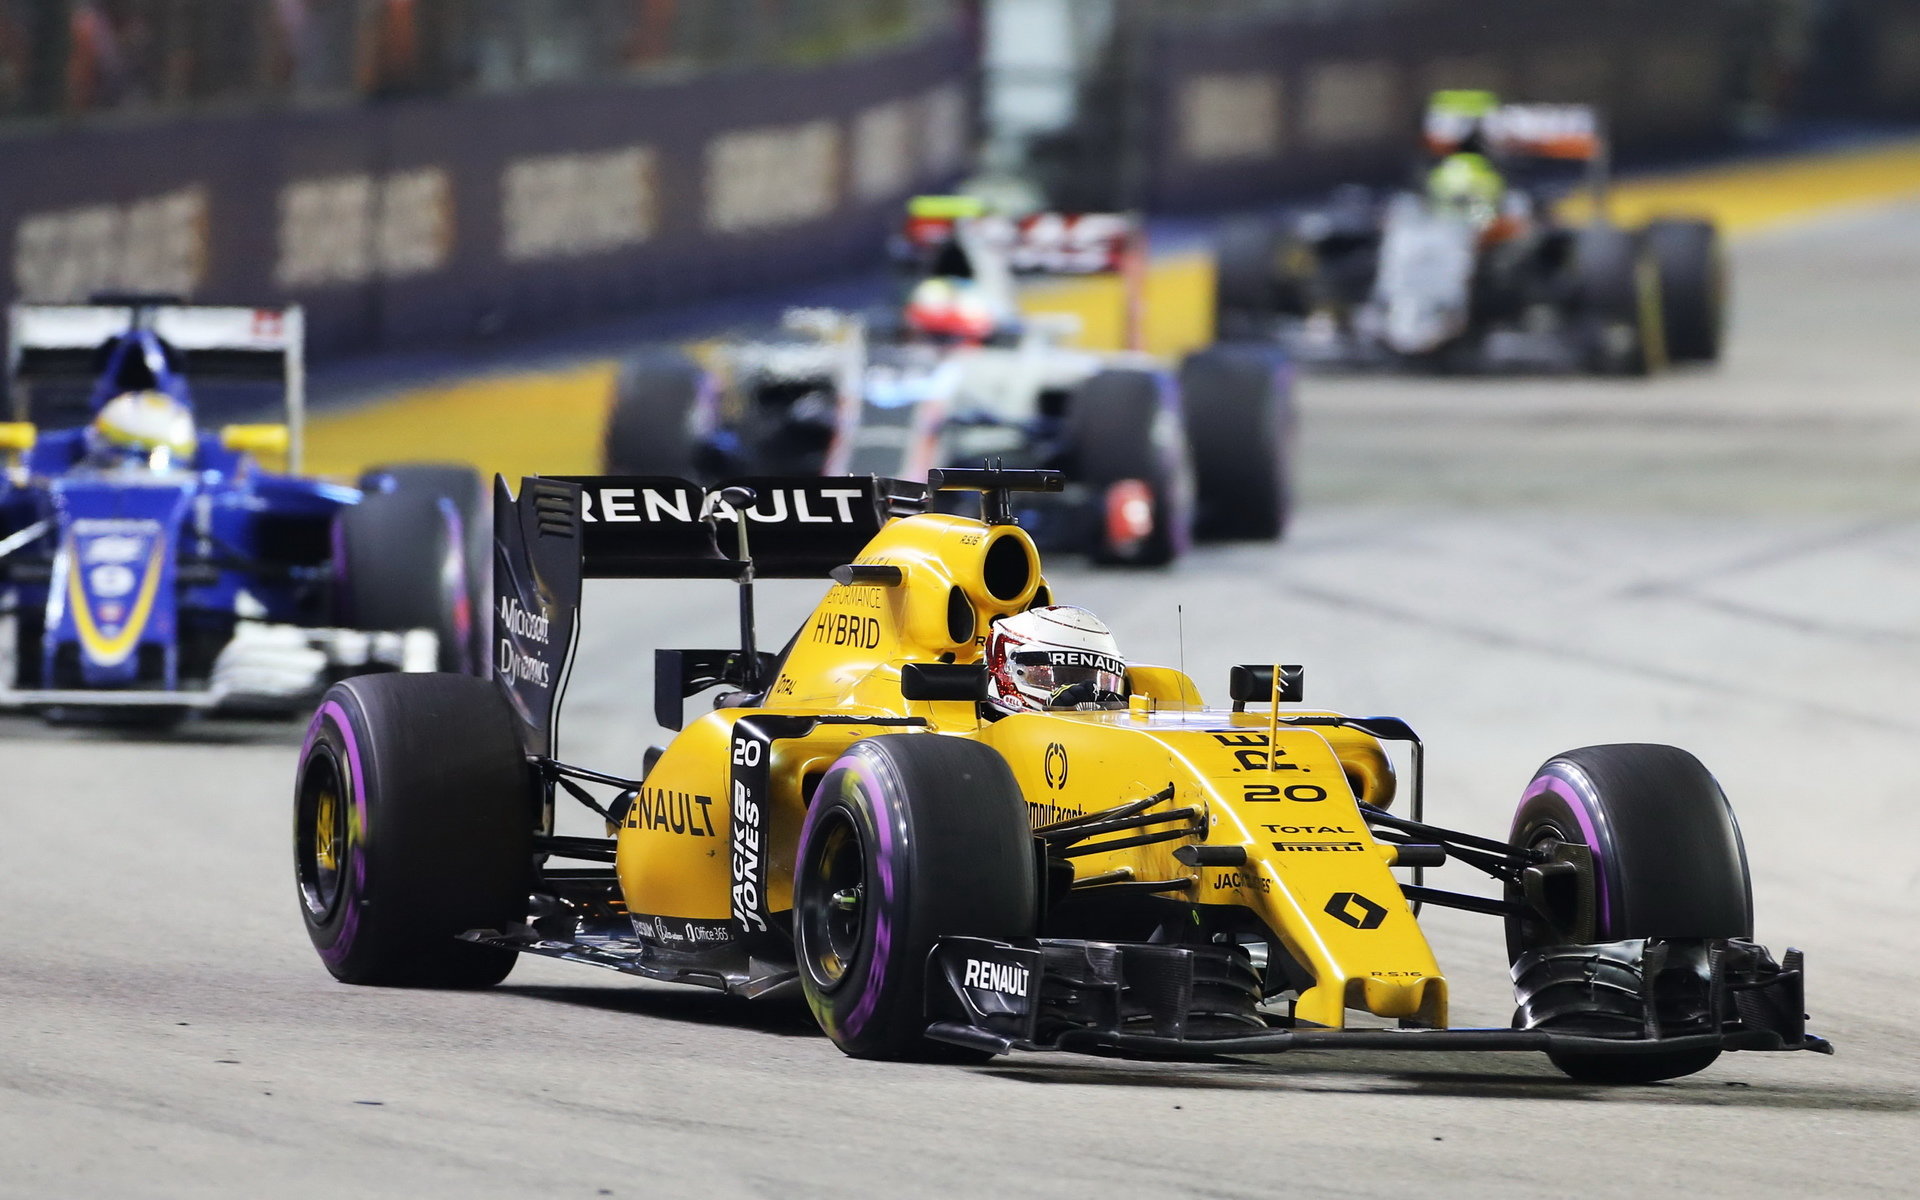 Na Kevina Magnussena bychom neměli zapomenout, po čtyřech a půl měsíci opět zapsal Renault do bodovaného pořadí